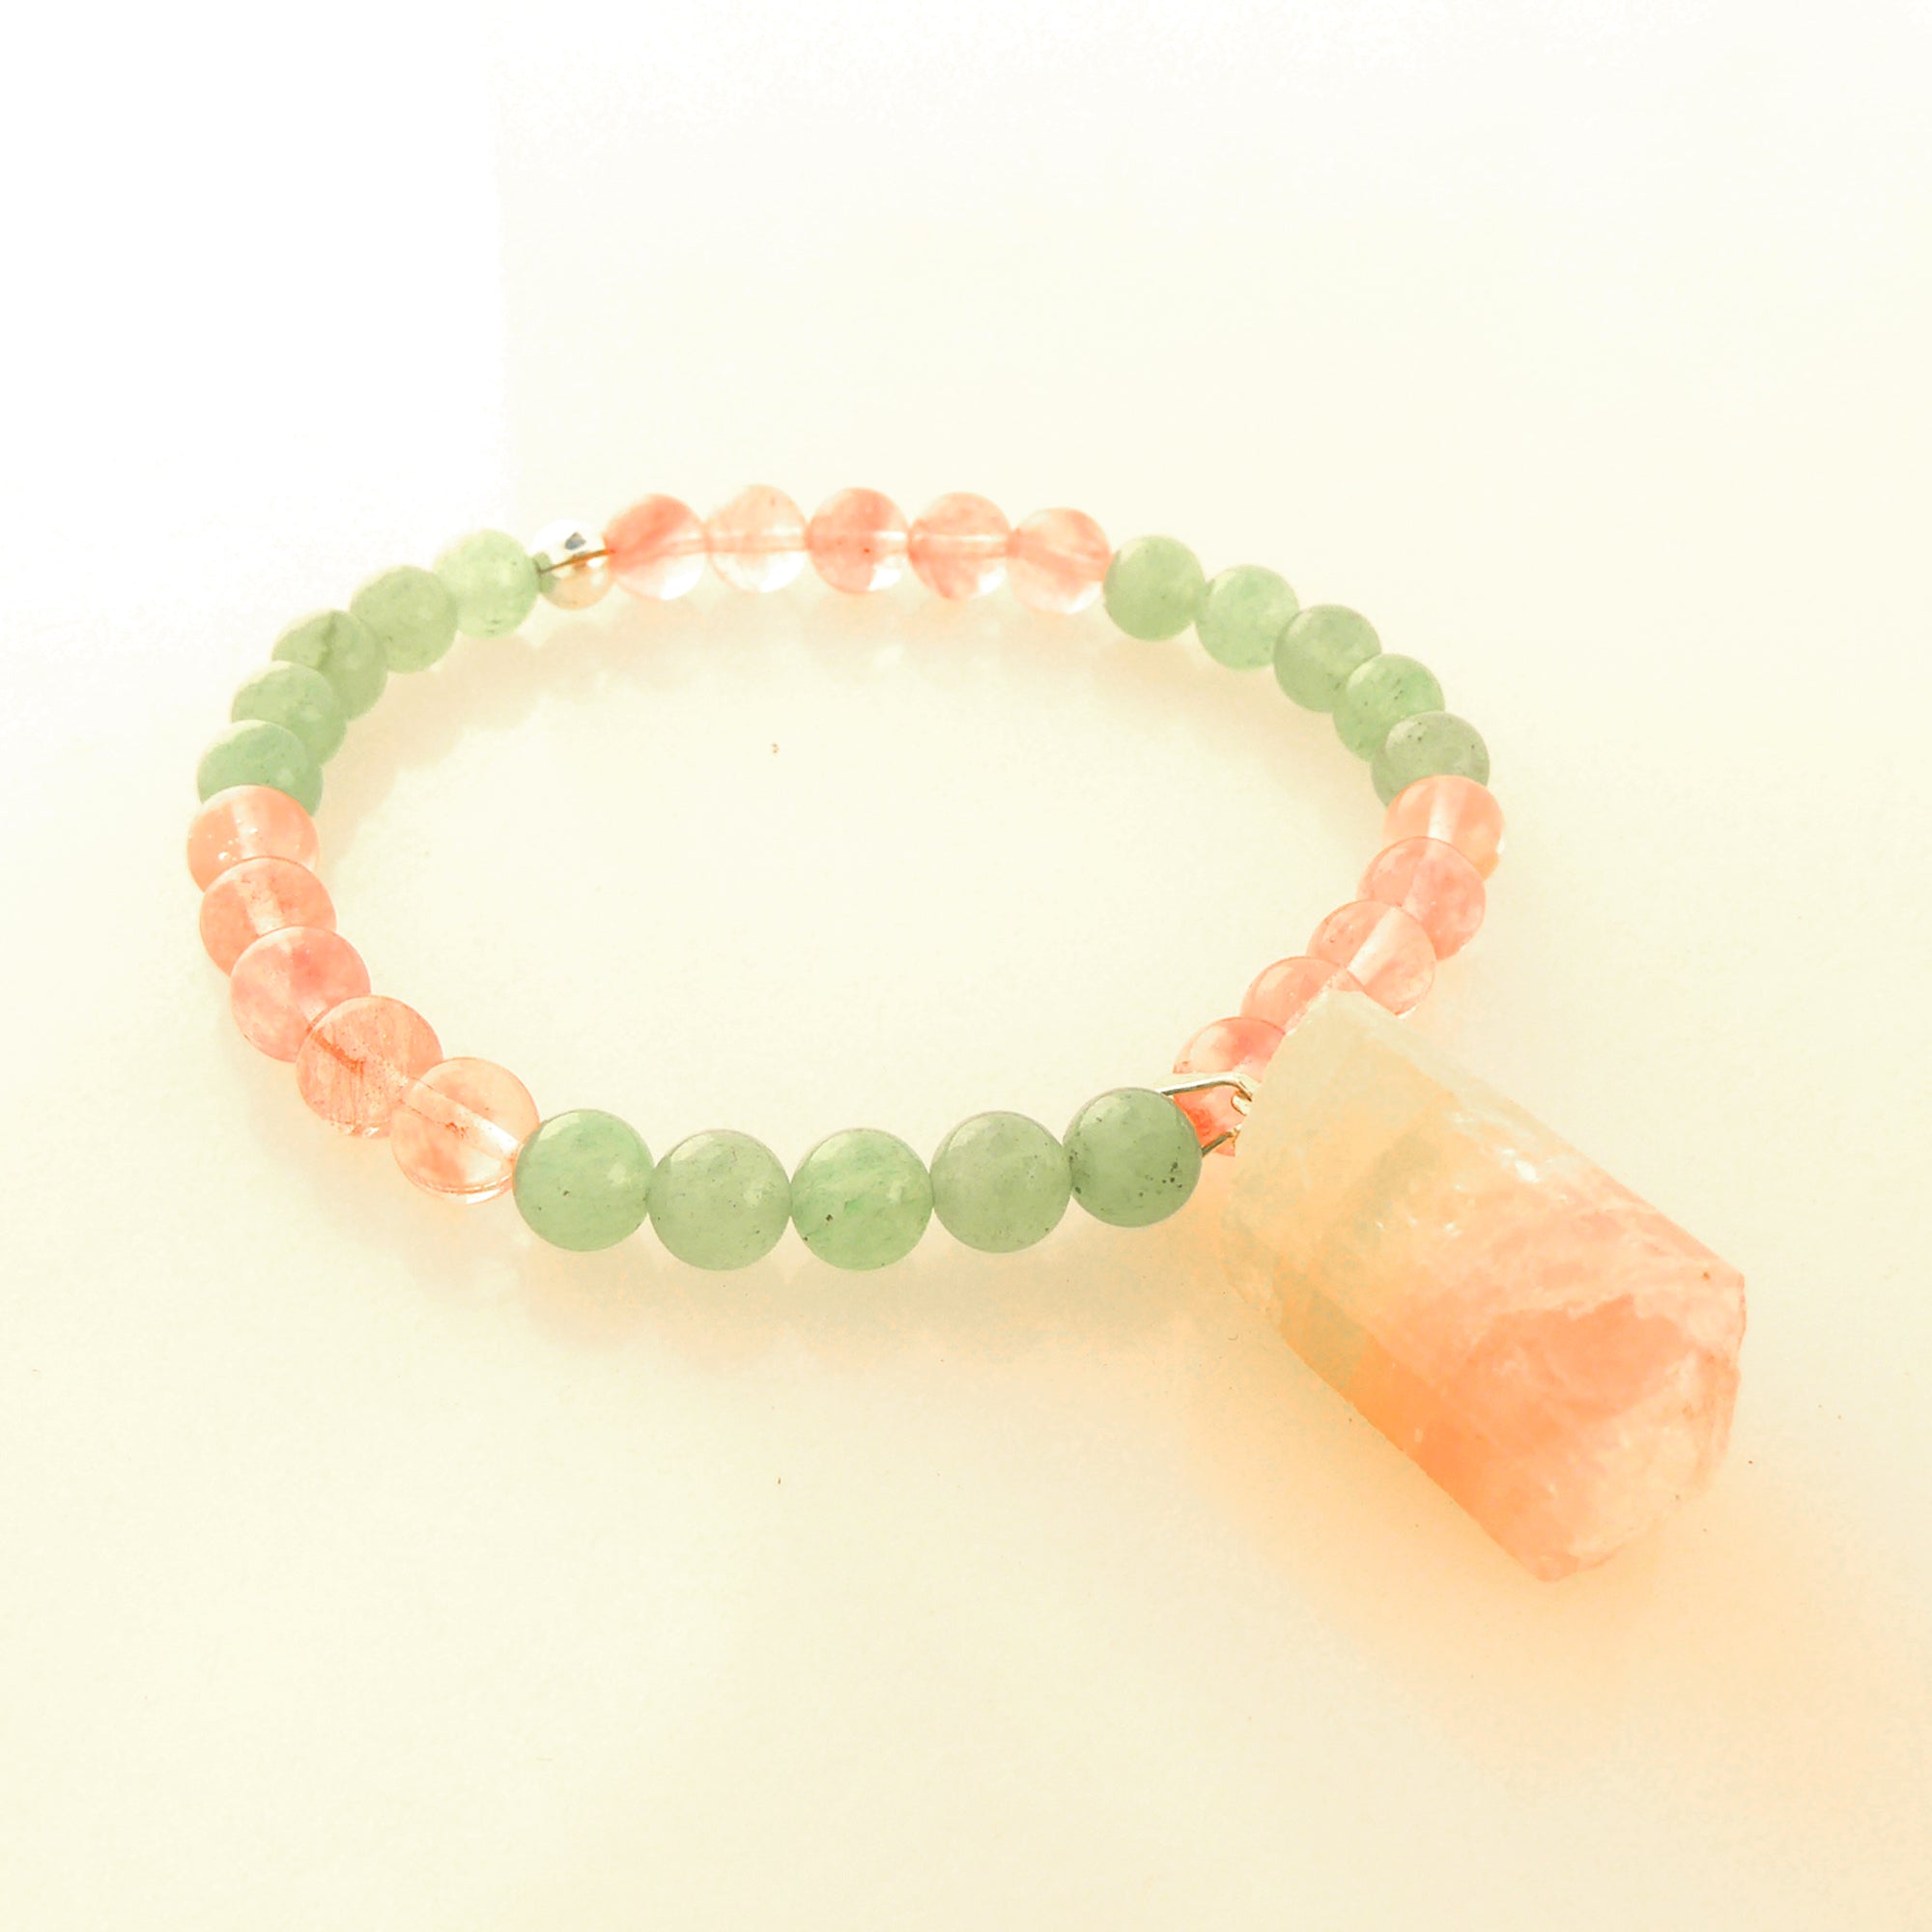 Watermelon tourmaline cherry quartz green aventurine bracelet by Jenny Dayco 2